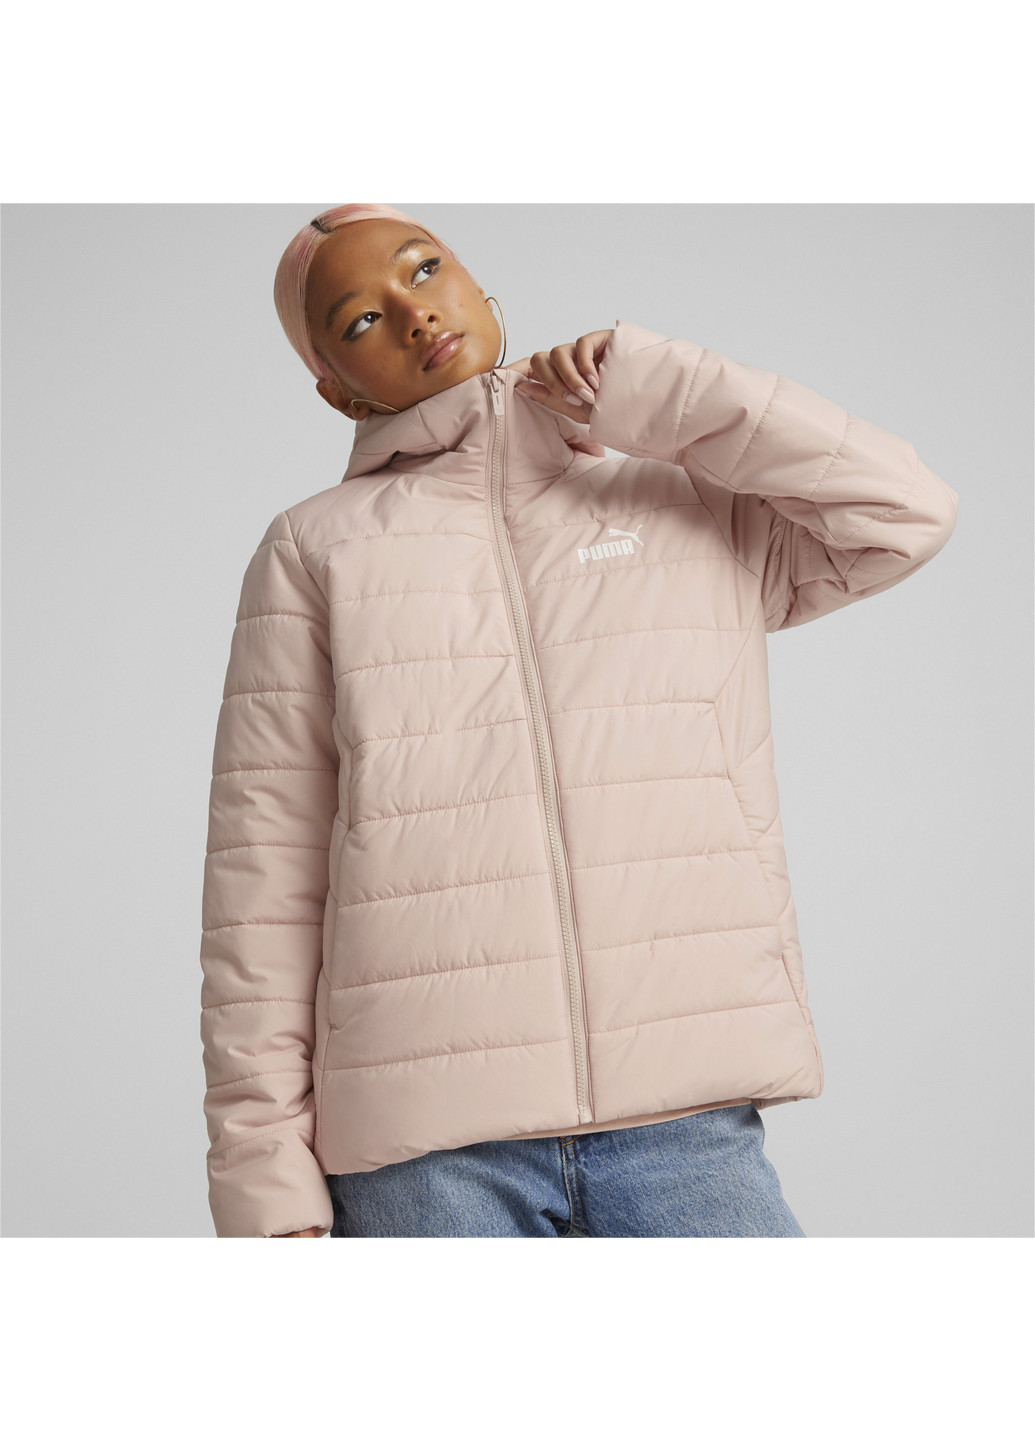 Куртка Essentials Padded Jacket Women Puma однотонный розовый спортивный полиэстер